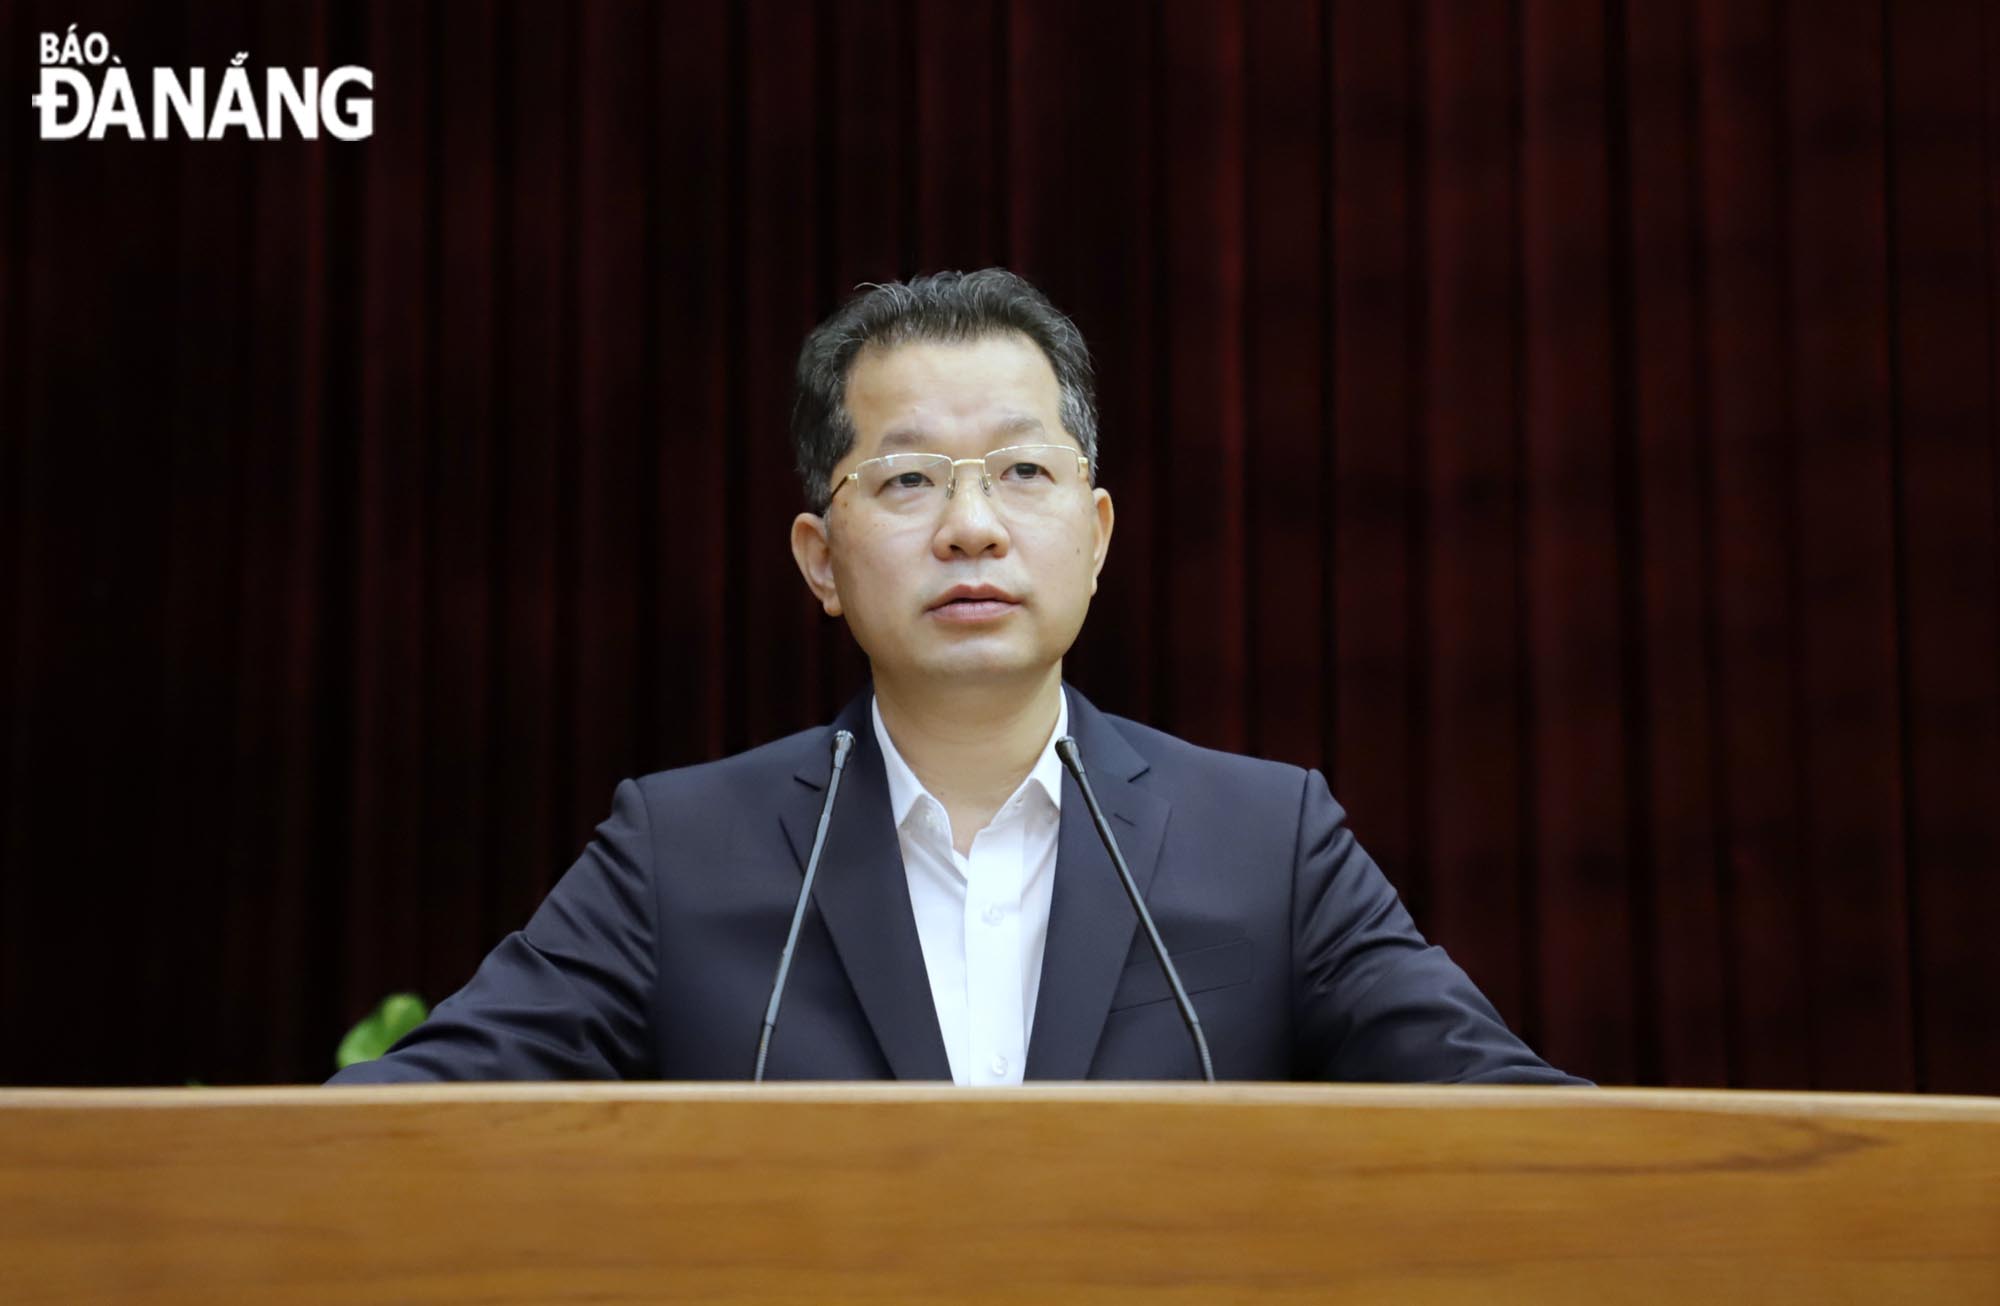 Bí thư Thành ủy Nguyễn Văn Quảng phát biểu chỉ đạo tại hội nghị. Ảnh: NGỌC PHÚ